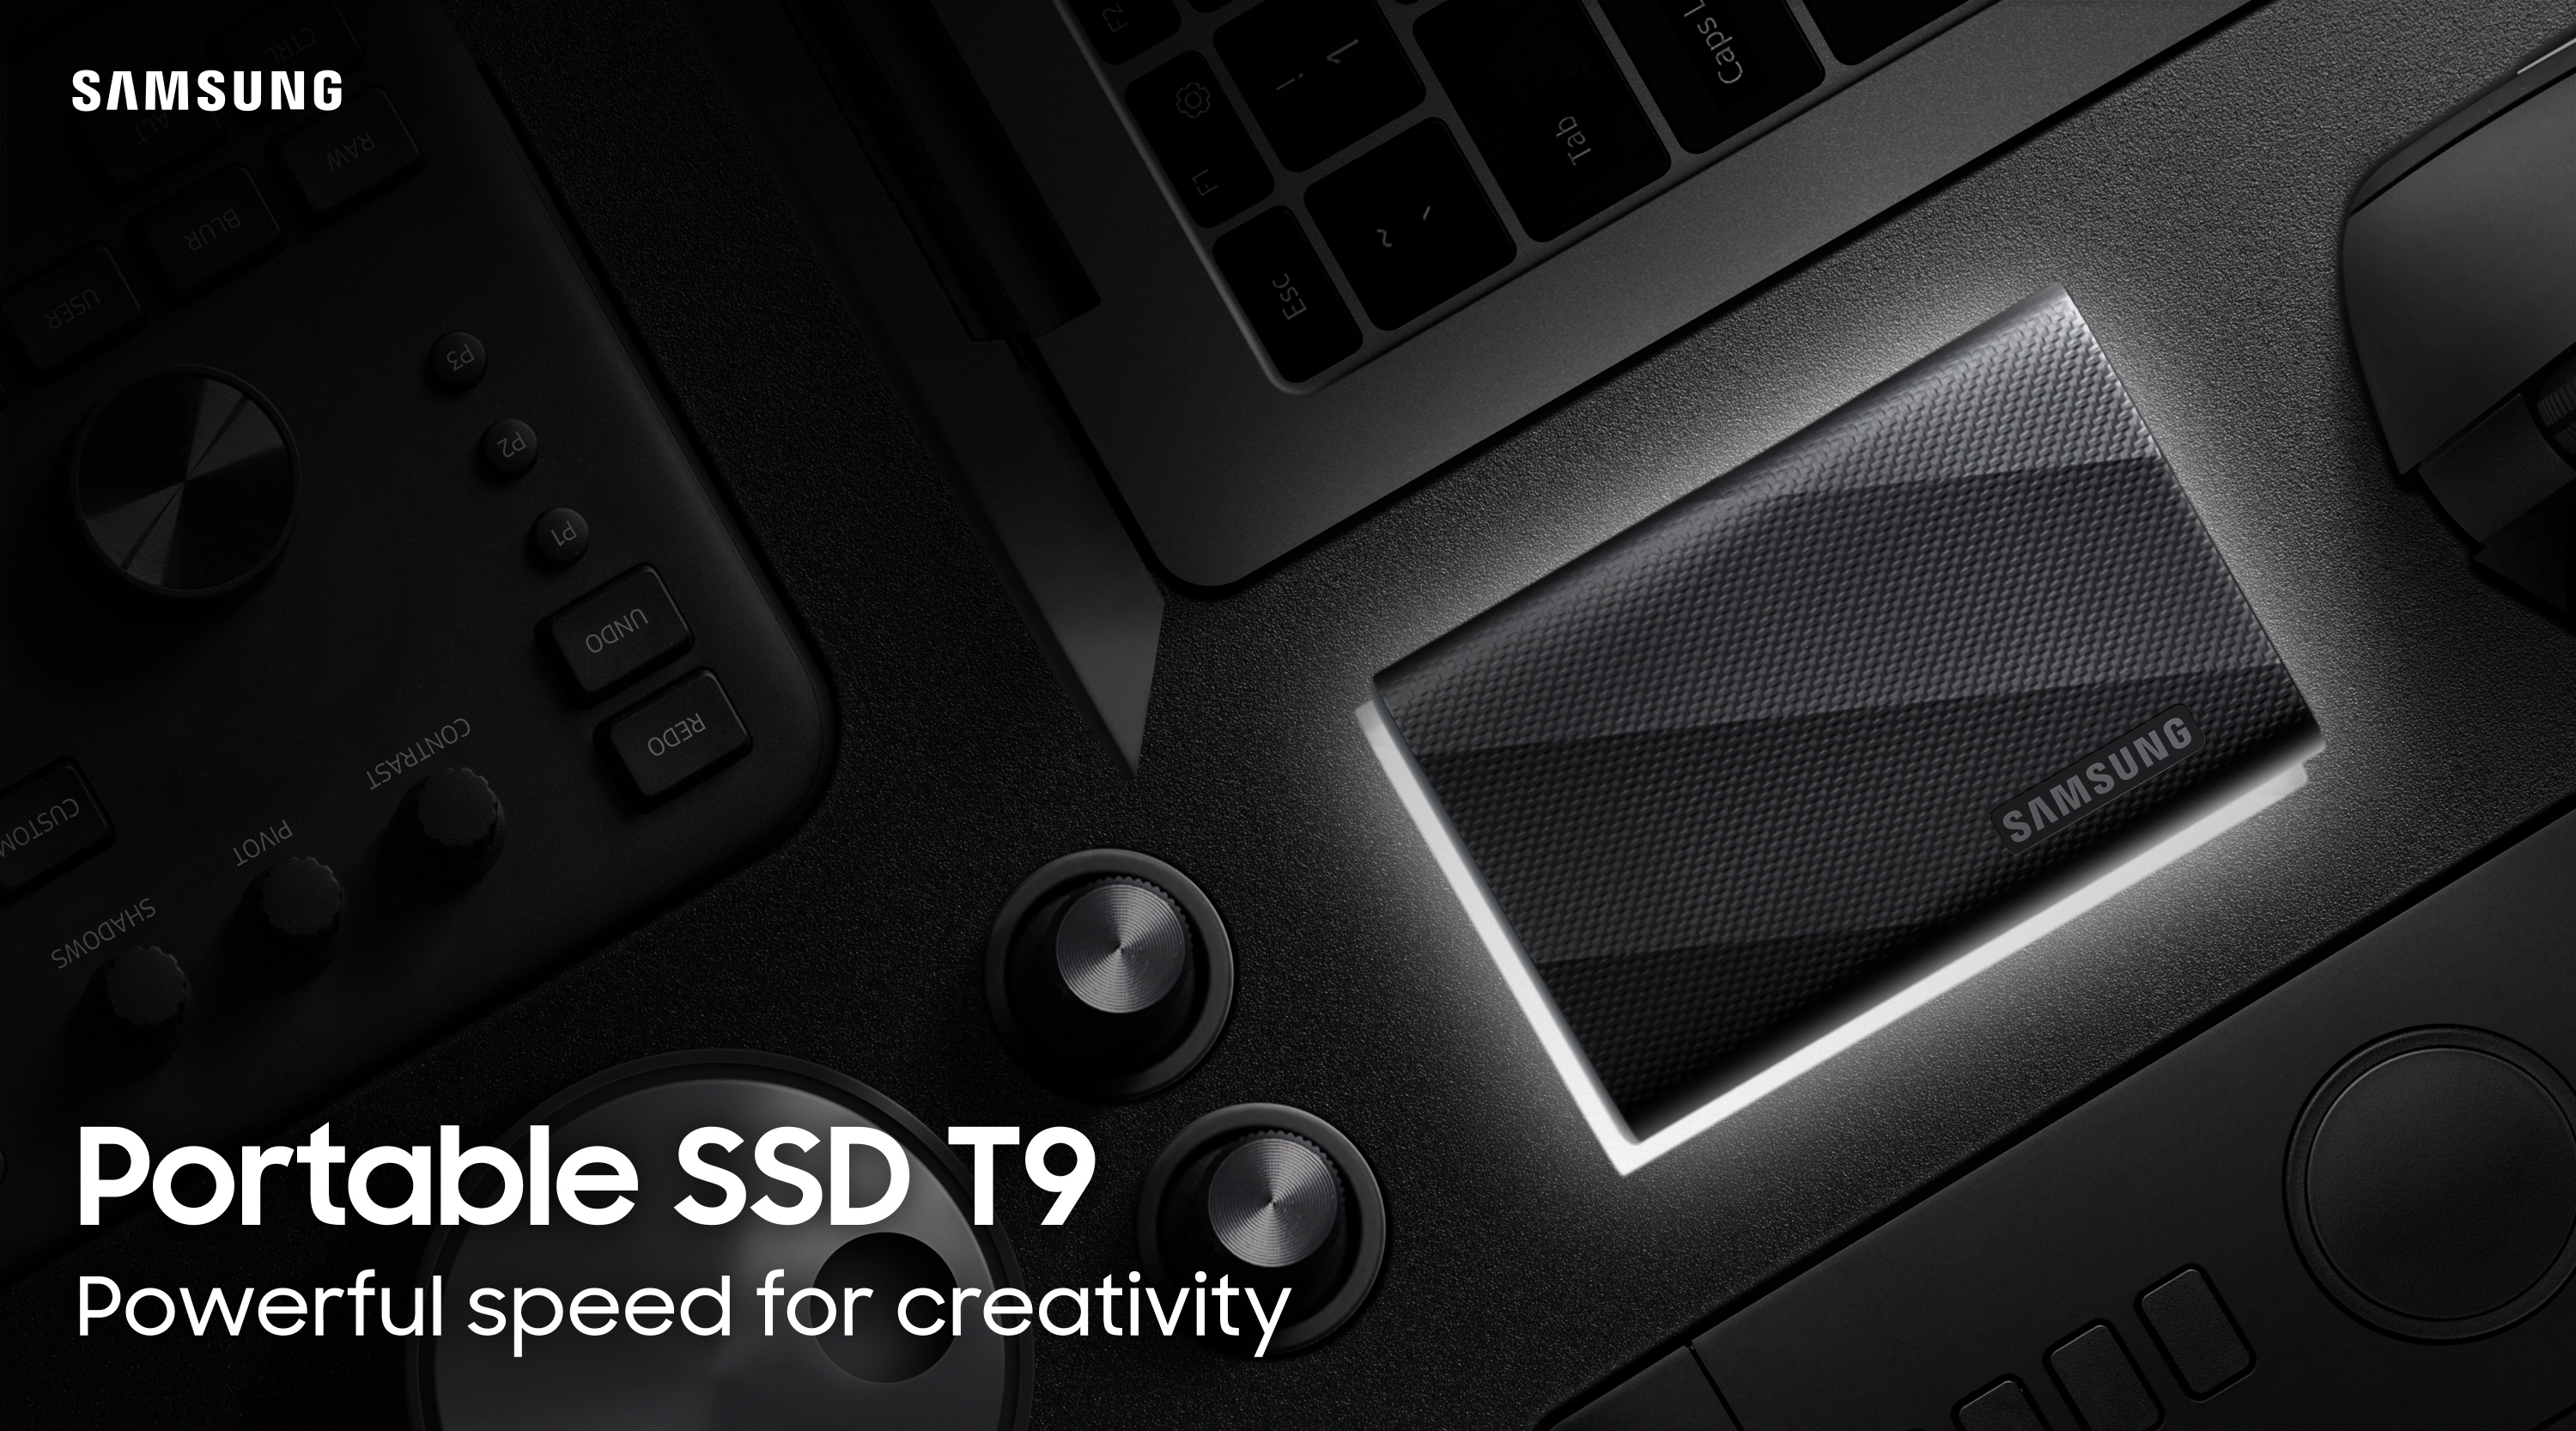 Samsung Portable SSD T9: bis zu 4 TB Speicherkapazität, USB 3.2 Gen 2×2 Schnittstelle und Lesegeschwindigkeiten von bis zu 2000 MB/Sek.